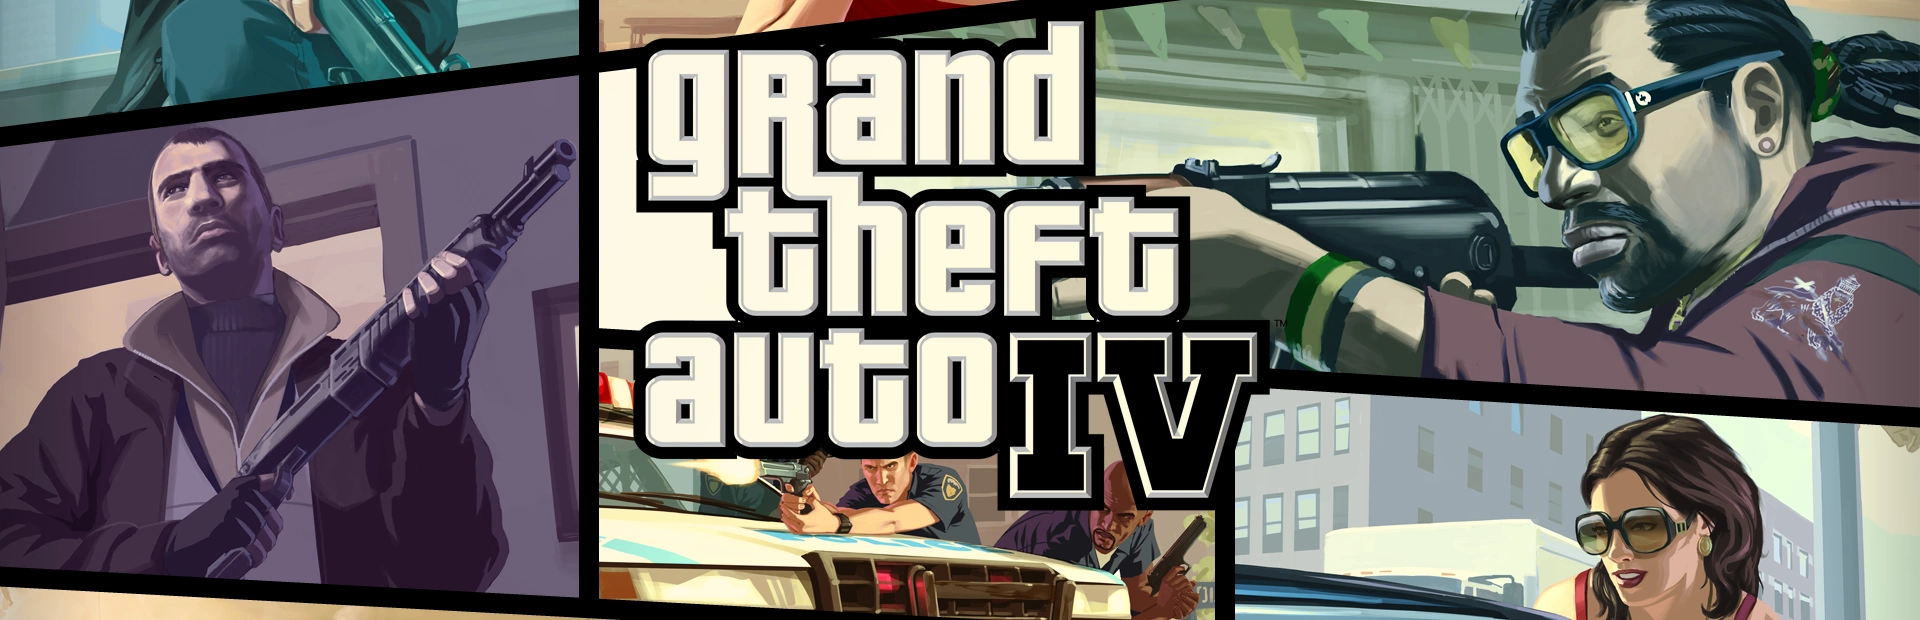 دانلود بازی Grand Theft Auto IV برای کامپیوتر | گیمباتو